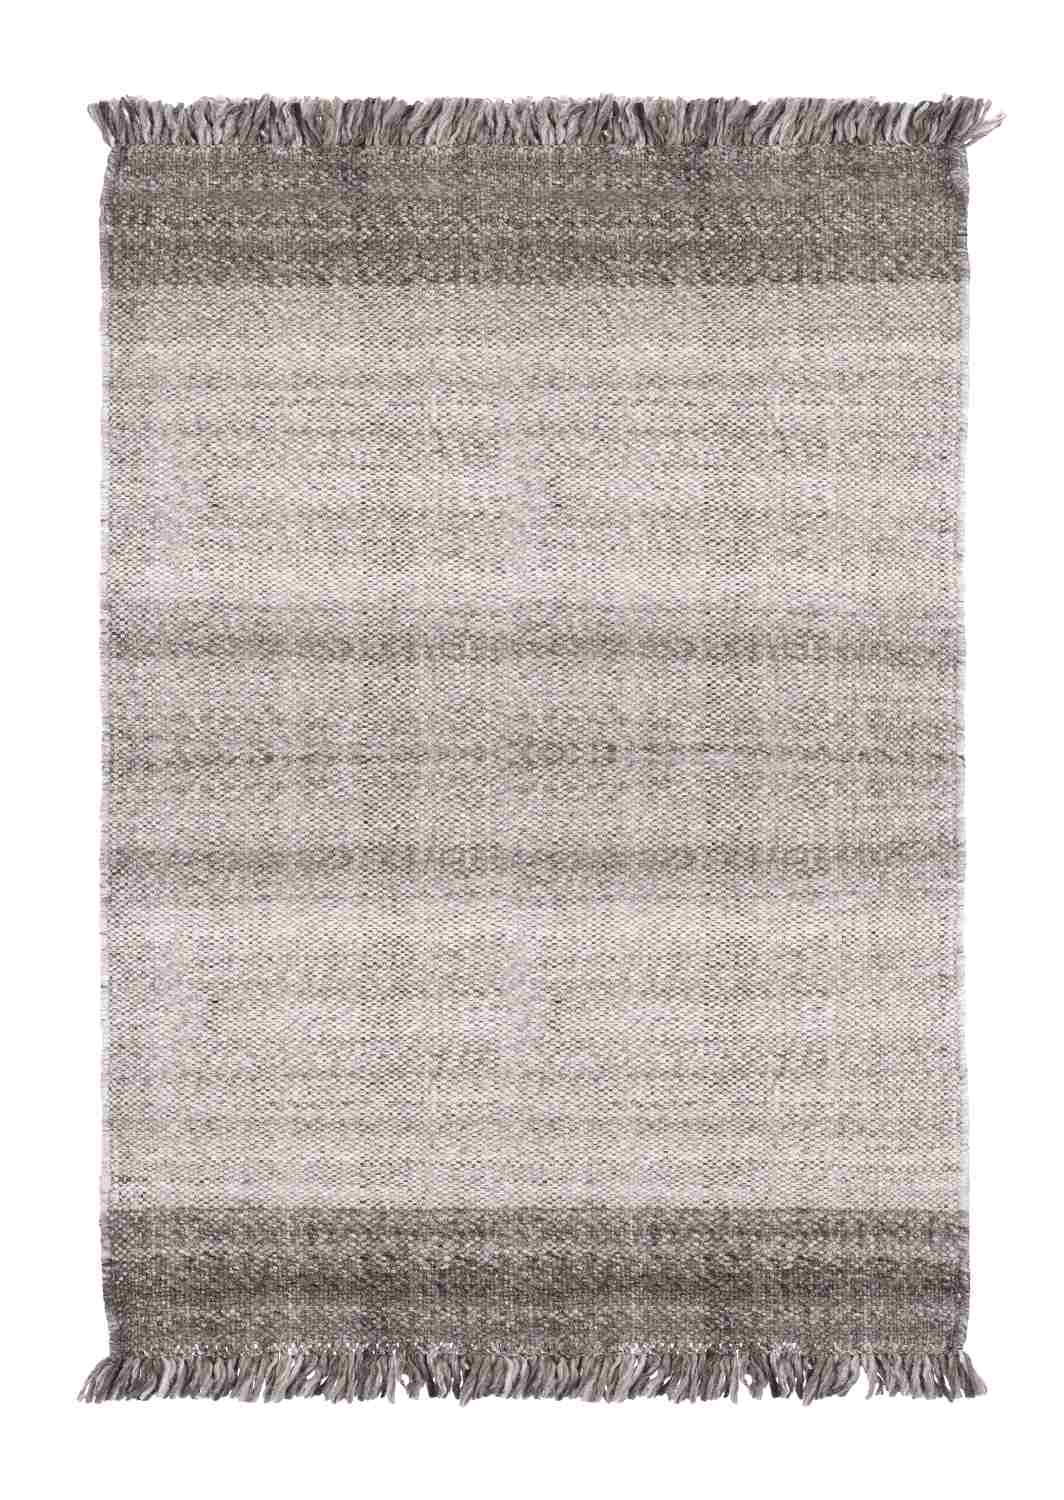 Der Teppich Kalpani überzeugt mit seinem Klassischen Design. Gefertigt wurde er aus 100% Polyester. Der Teppich besitzt eine braunen Farbton und die Maße von 140x200 cm.